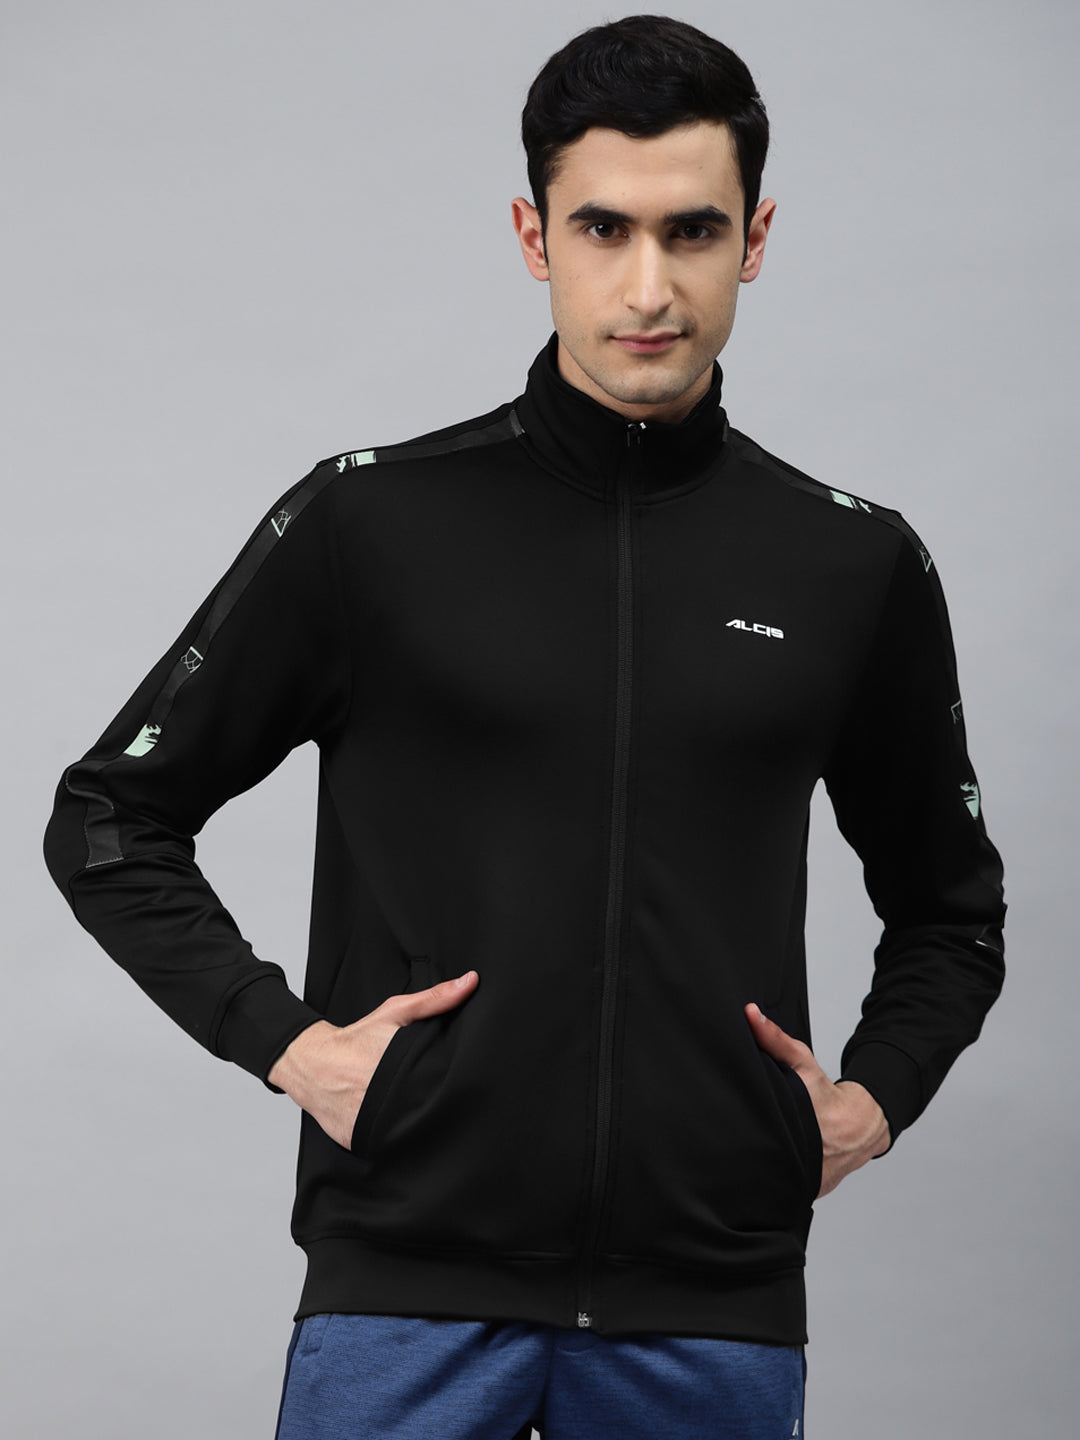 Alcis Men Black Solid Front-Open Sweatshirt